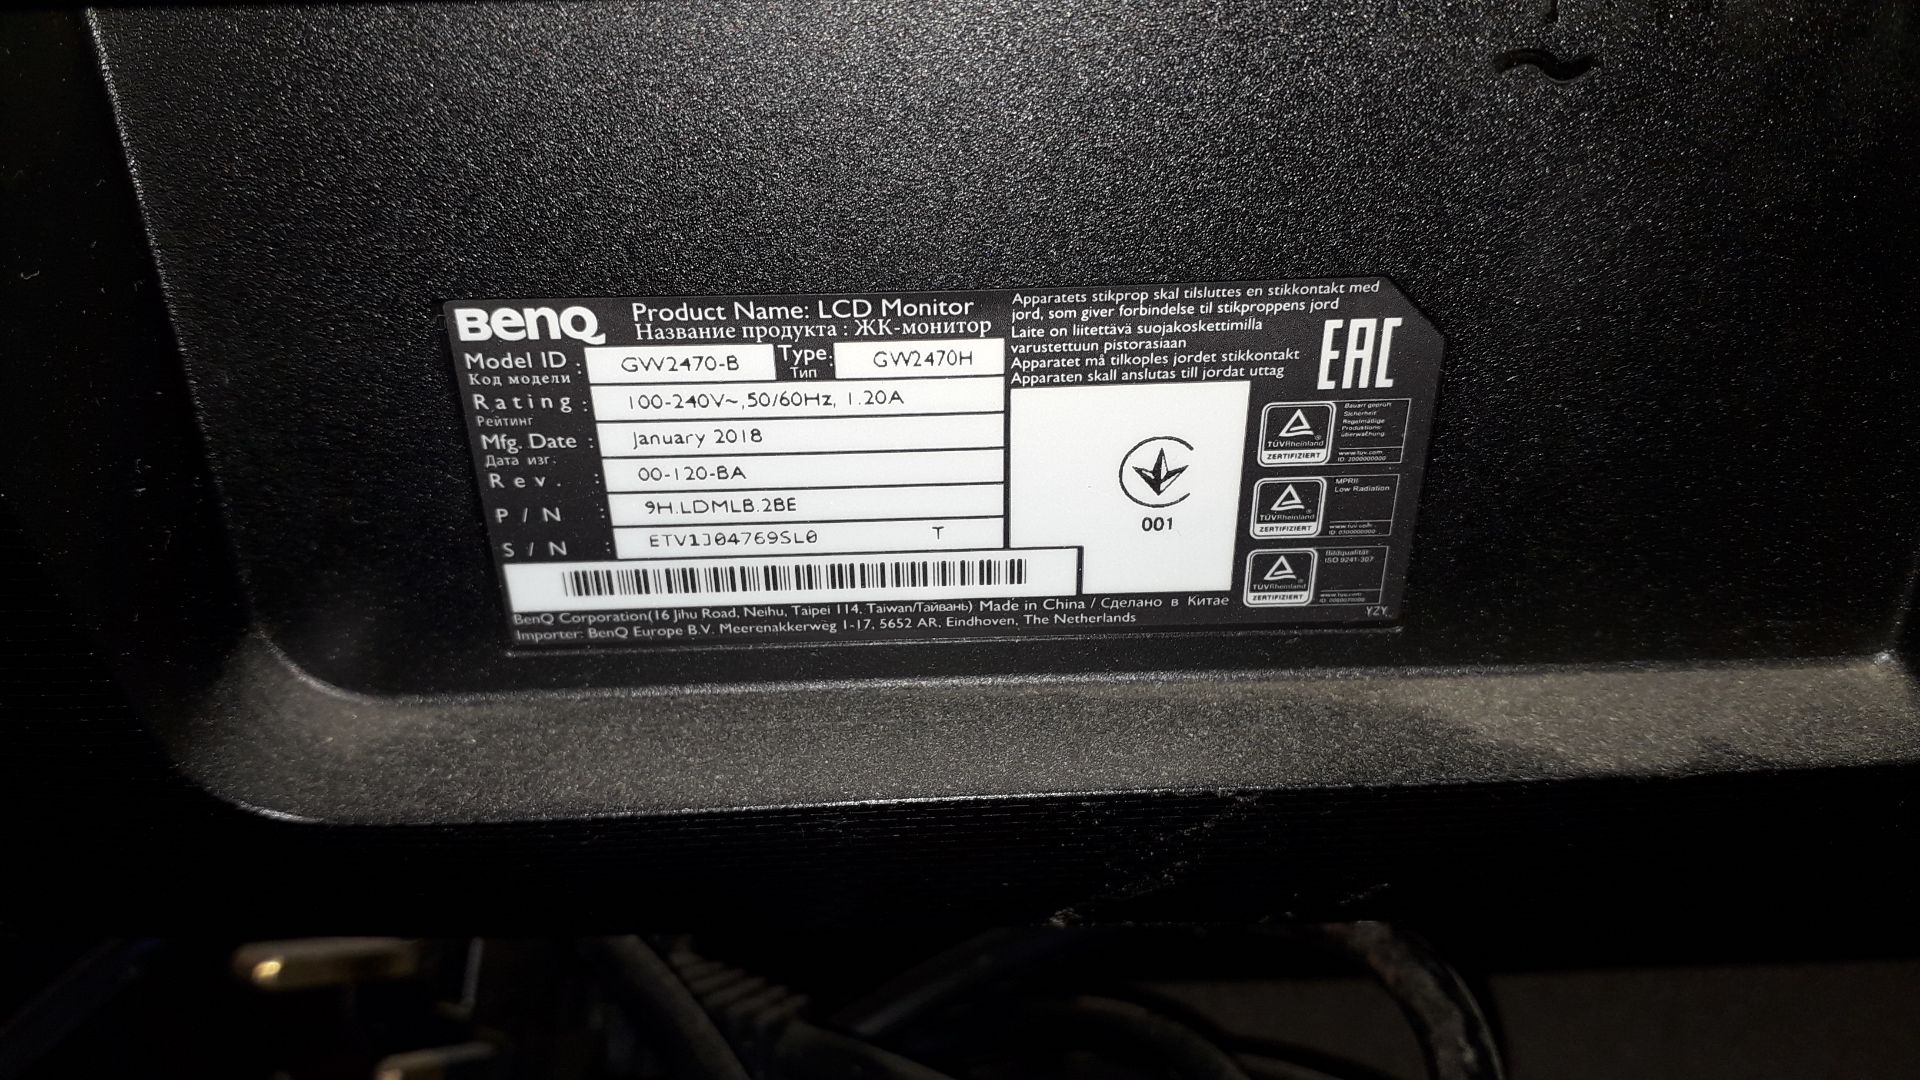 2 x BenQ GW2470-B 24" LCD Monitor, (May 2018) S/N ET85J04727SL0 - Image 3 of 3